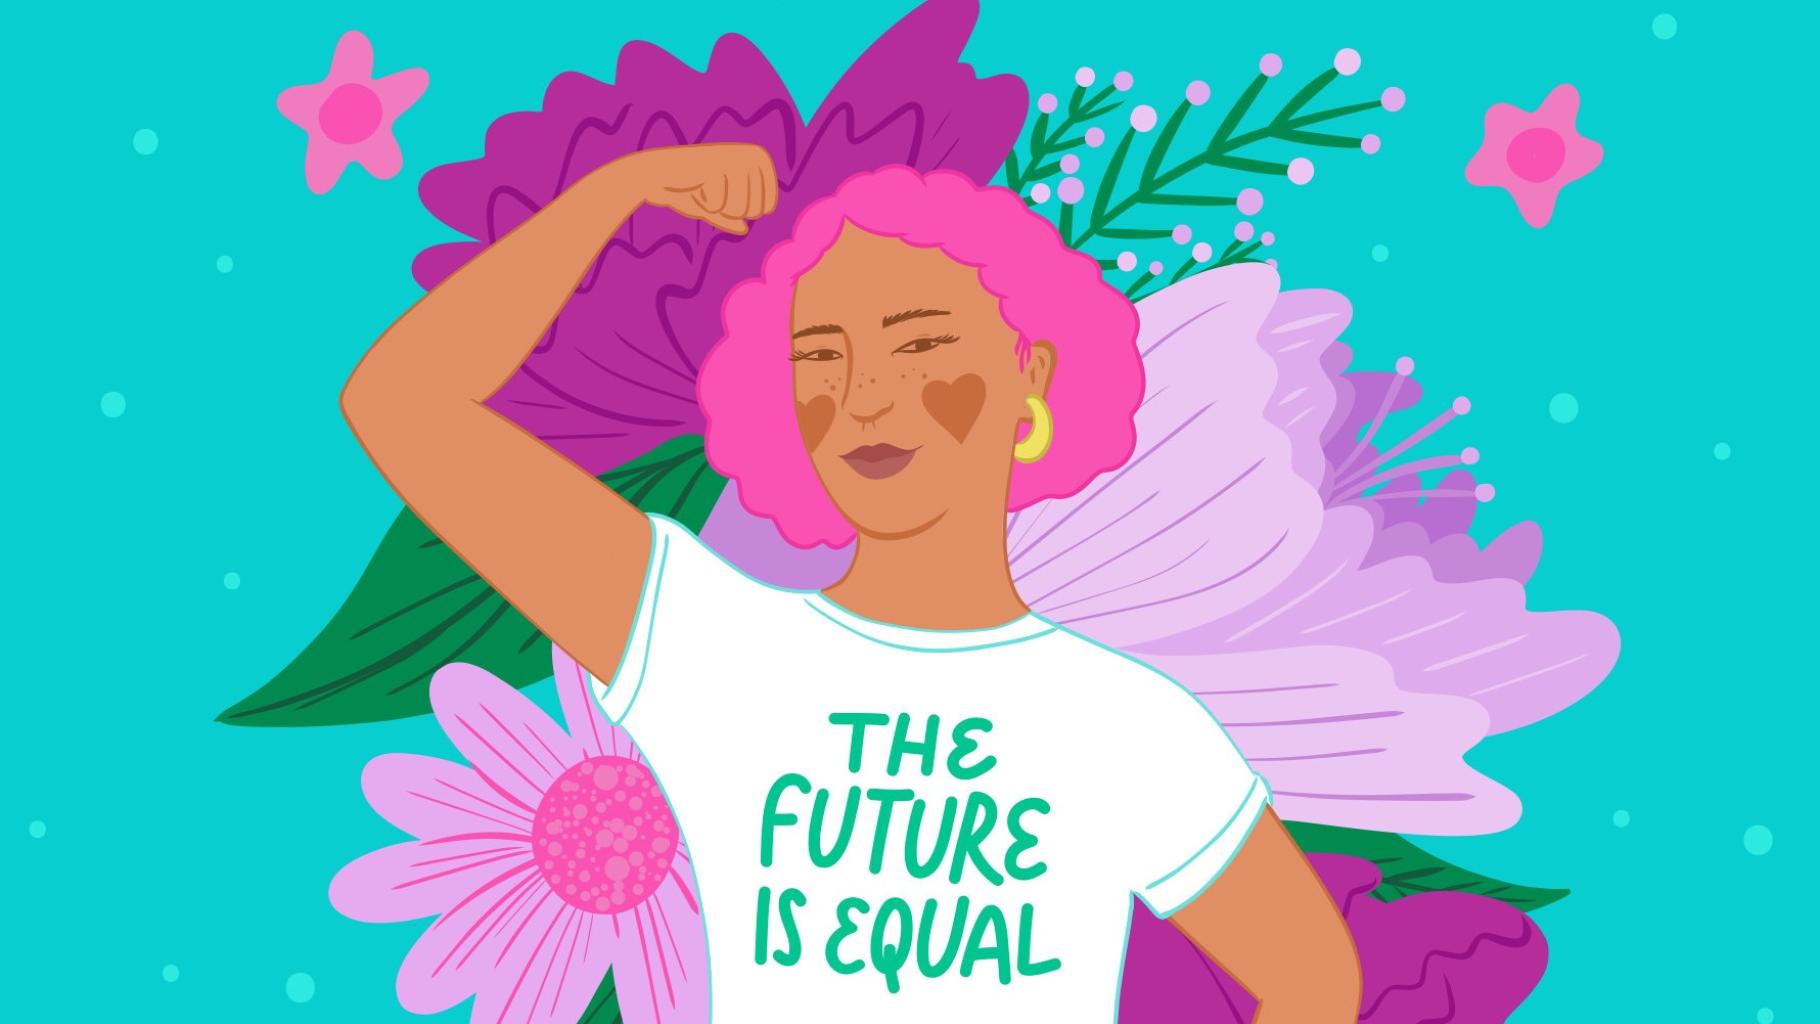 Bunte Grafik, auf der eine Frau mit pinken Haaren die Faust in die Luft streckt. Auf ihrem weißen T-Shirt steht "The future is equal".